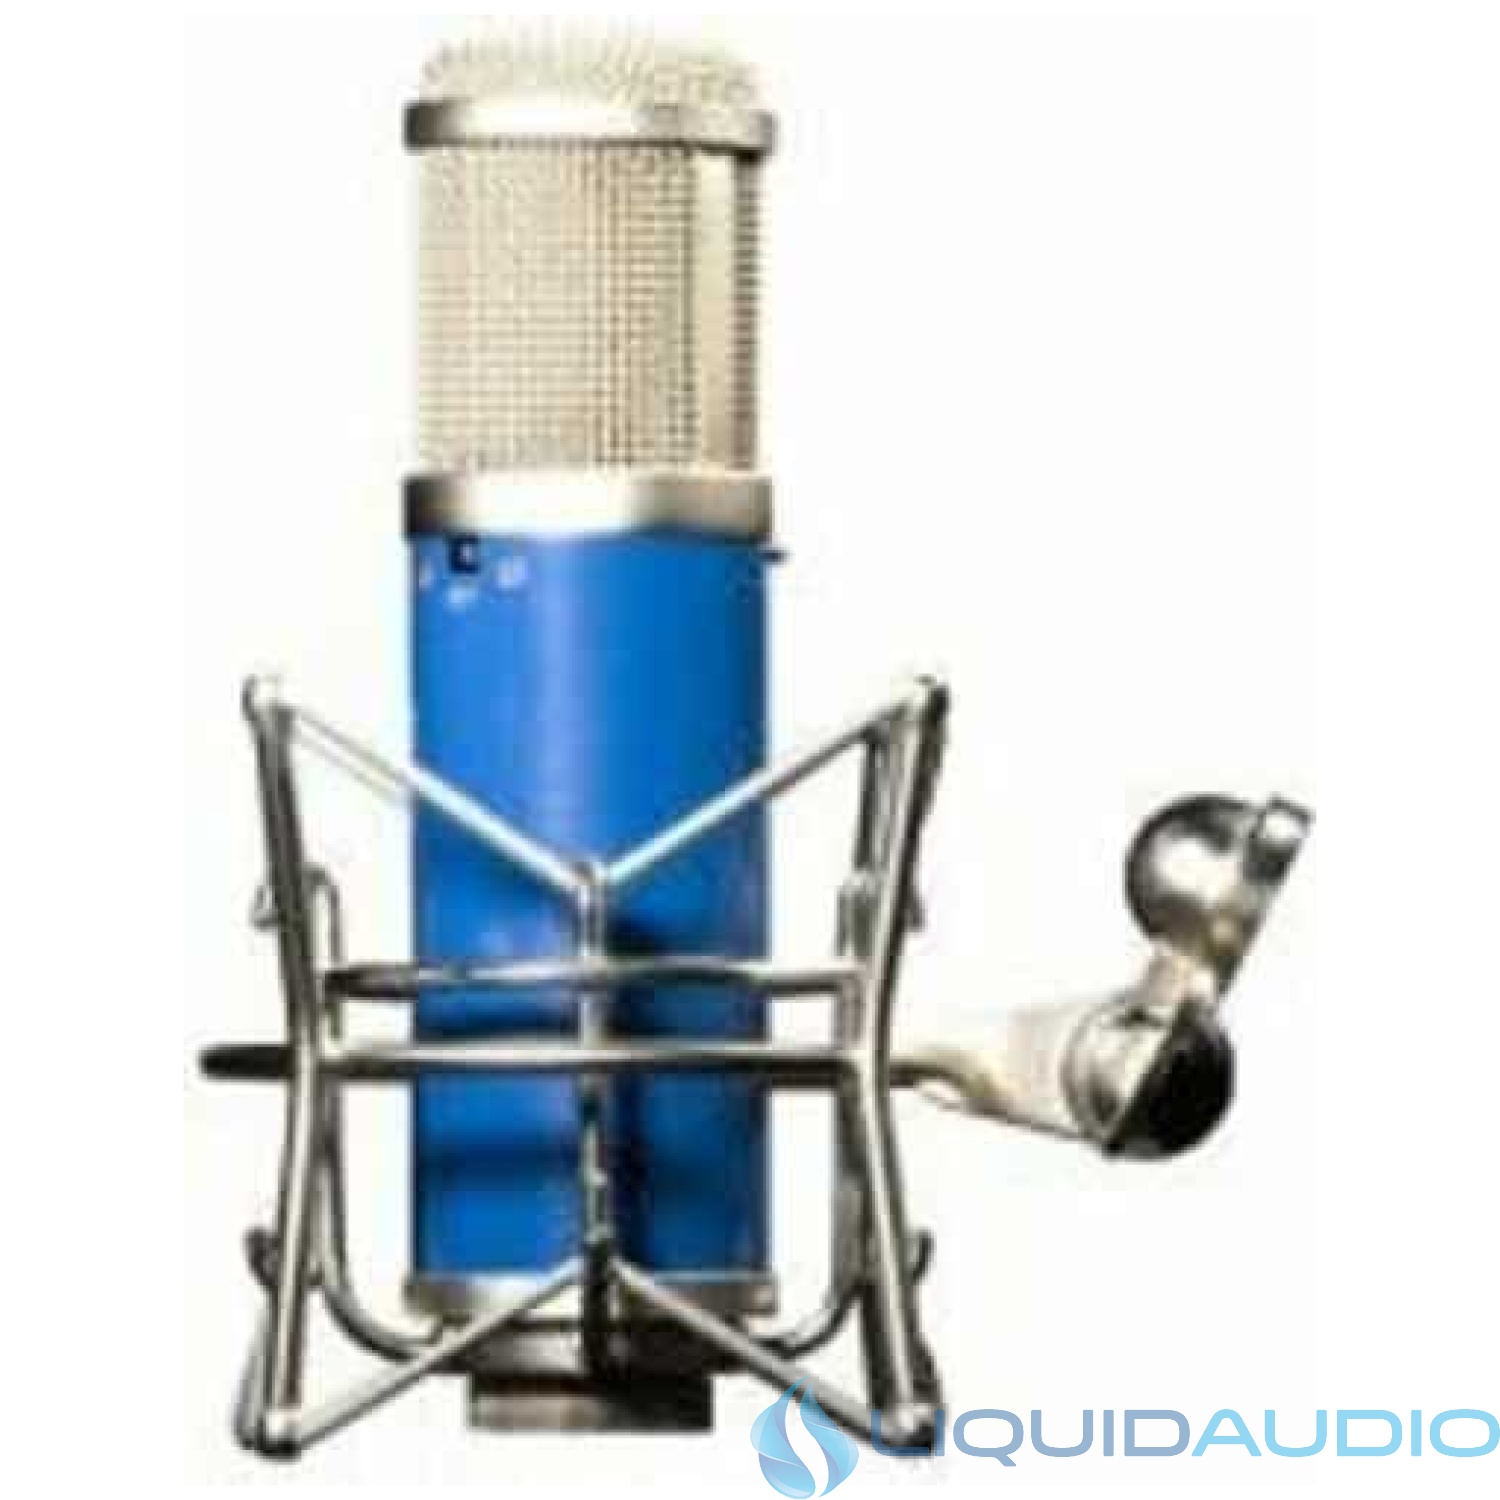 APEX 480 Multi-Pattern Wide Diaphragm FET Condenser Microphone